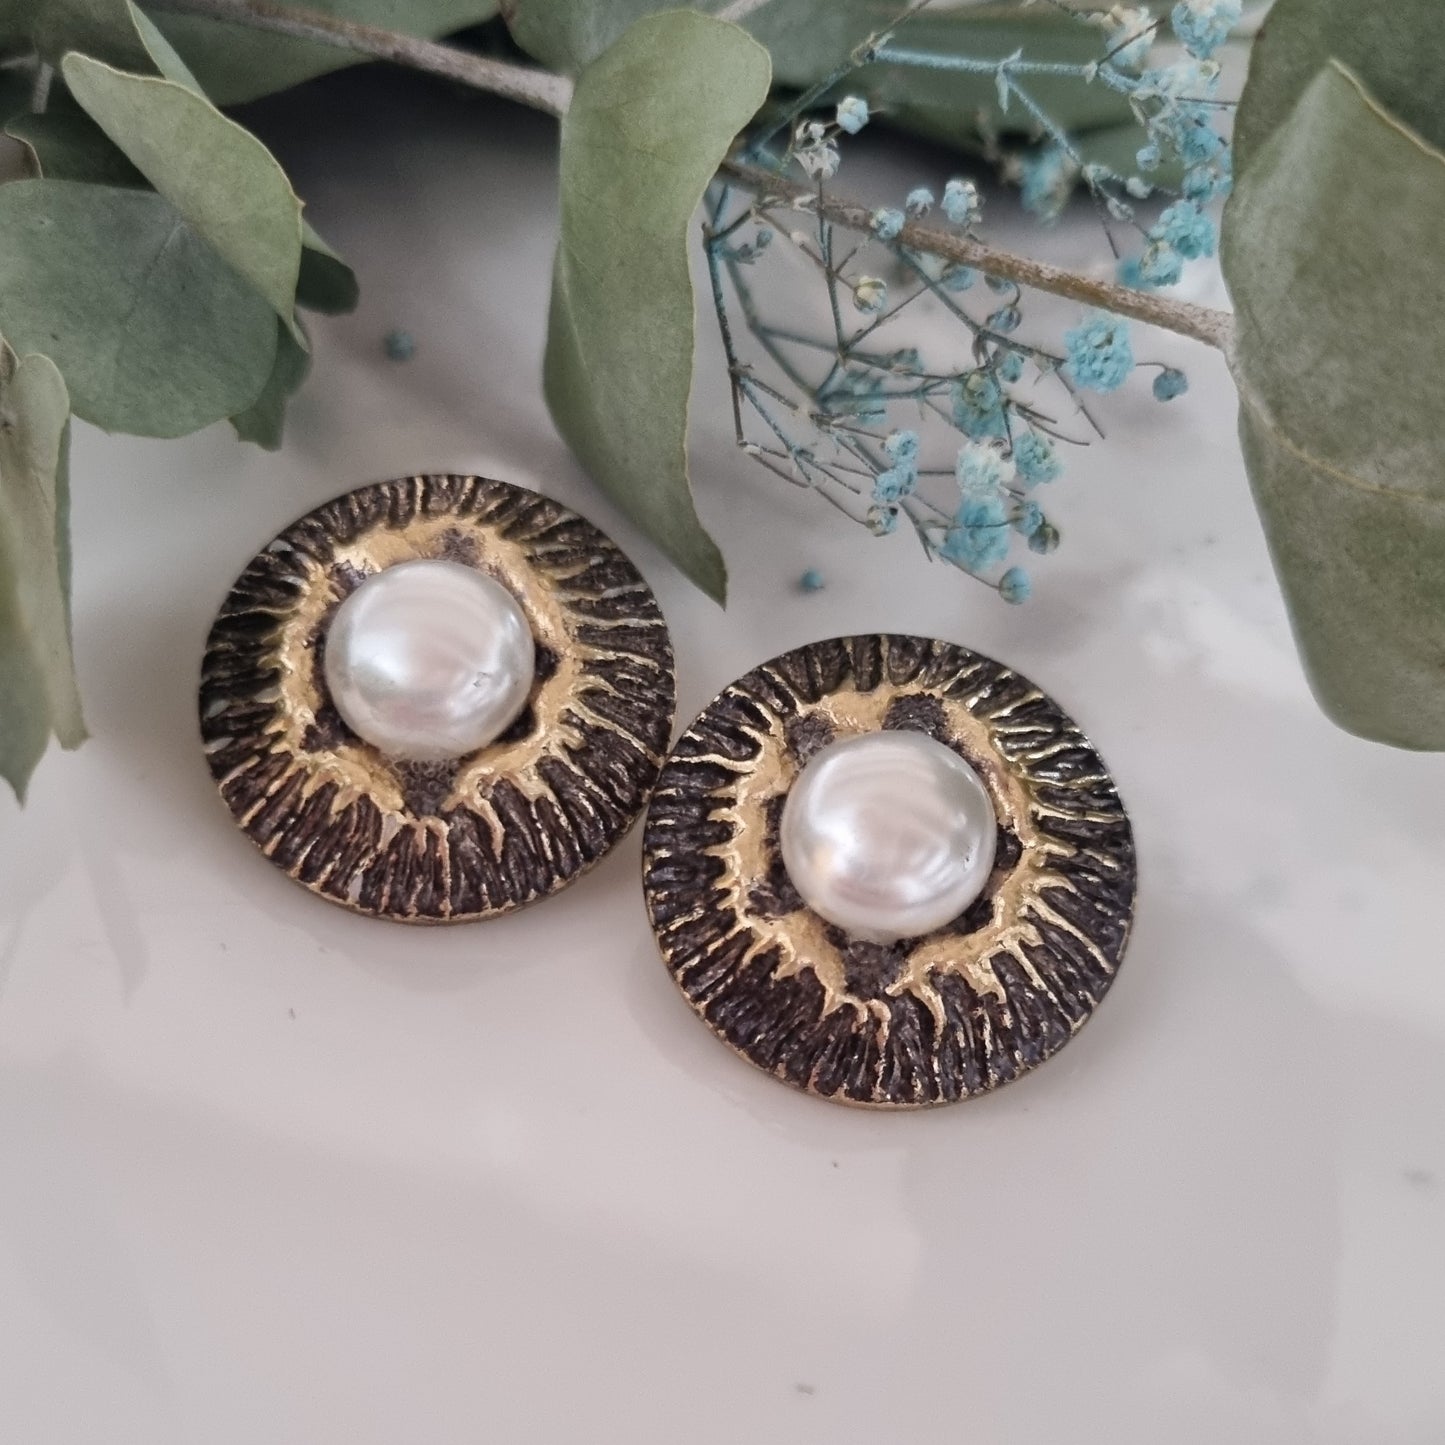 Vintage earrings - Antique/pearl